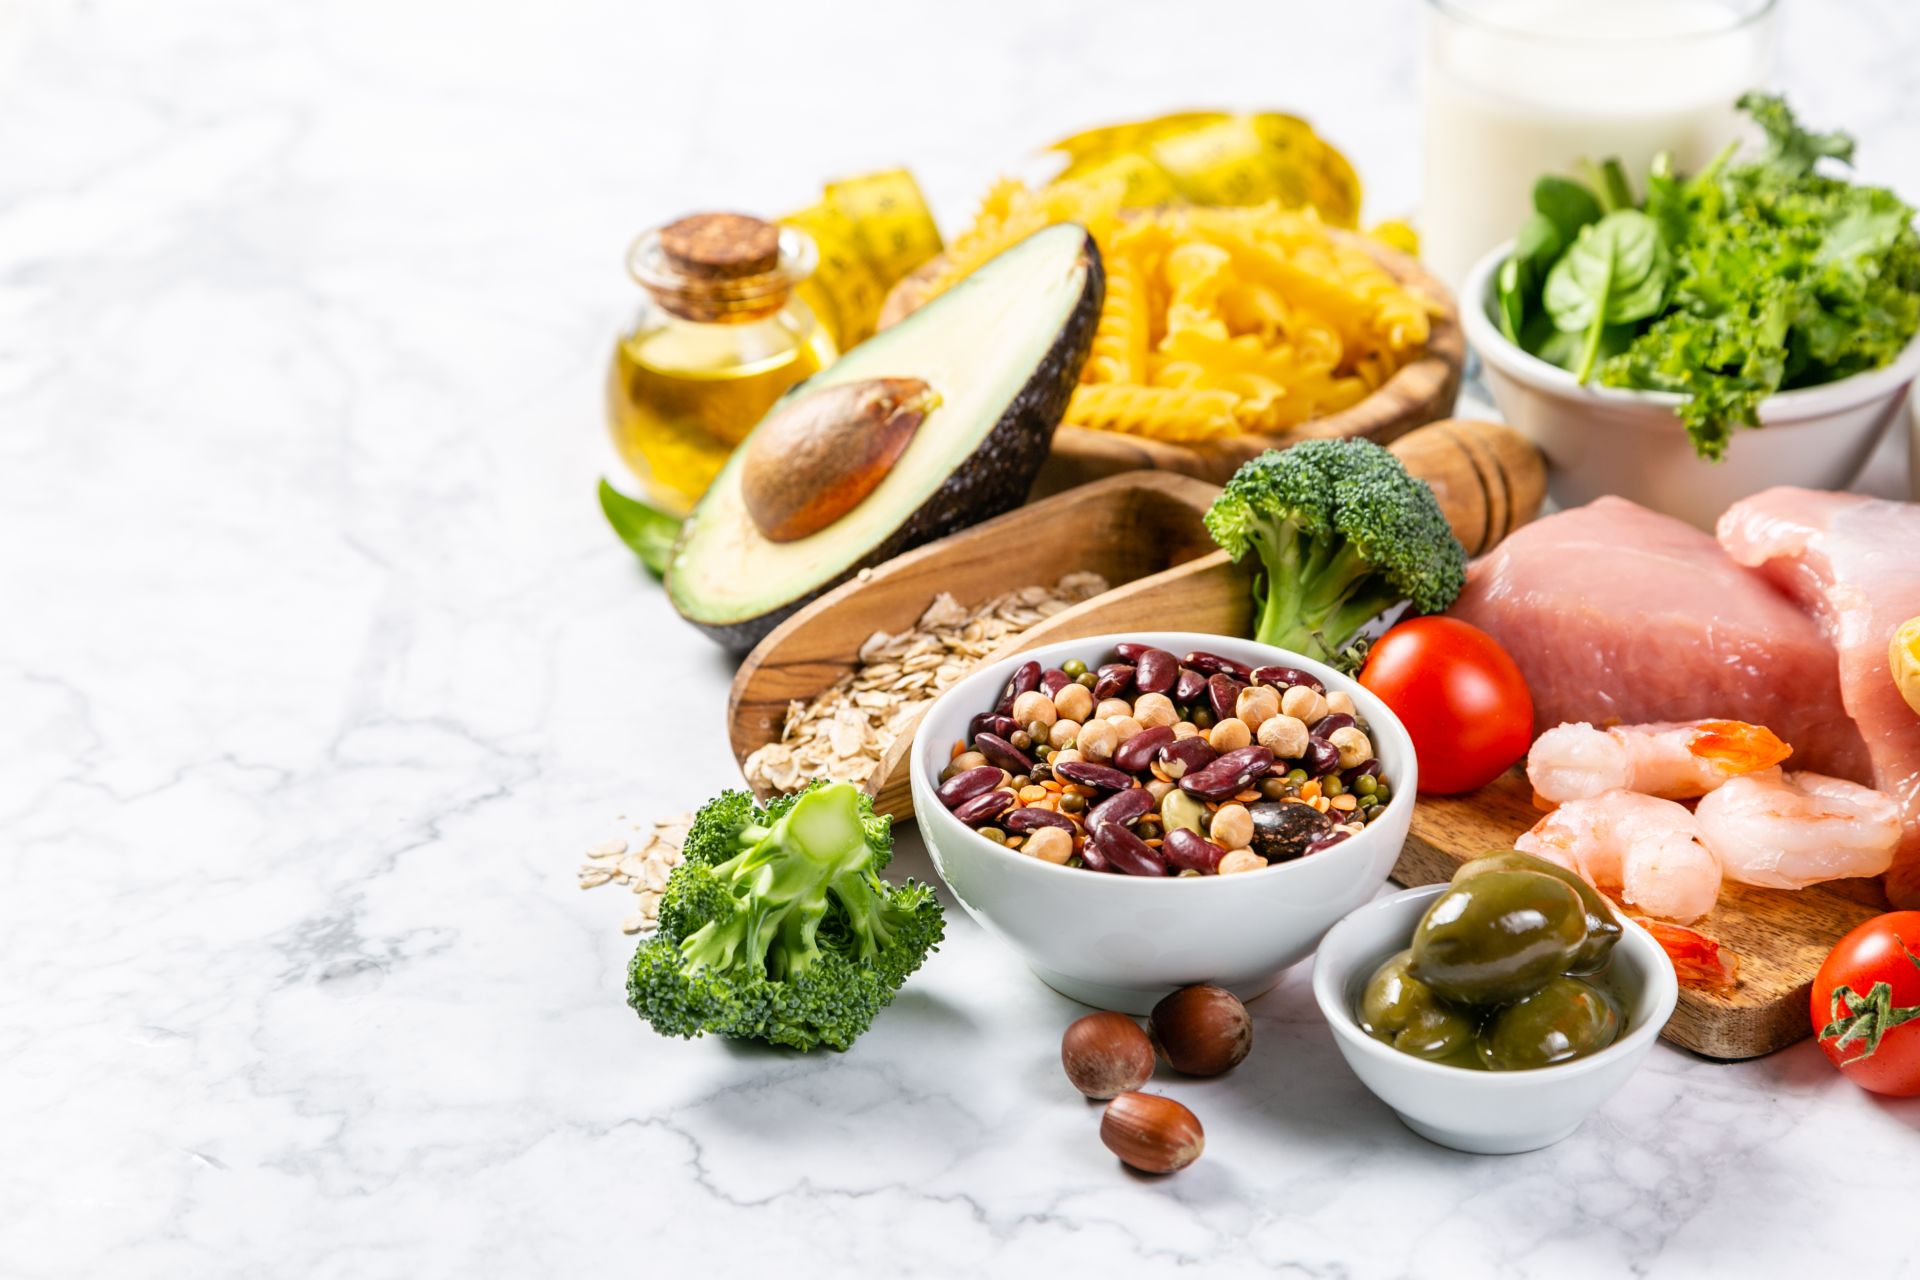 Dieta na nadciśnienie - dieta DASH pomaga obniżać ciśnienie bez leków oraz obniżać stężenie cholesterolu we krwi.